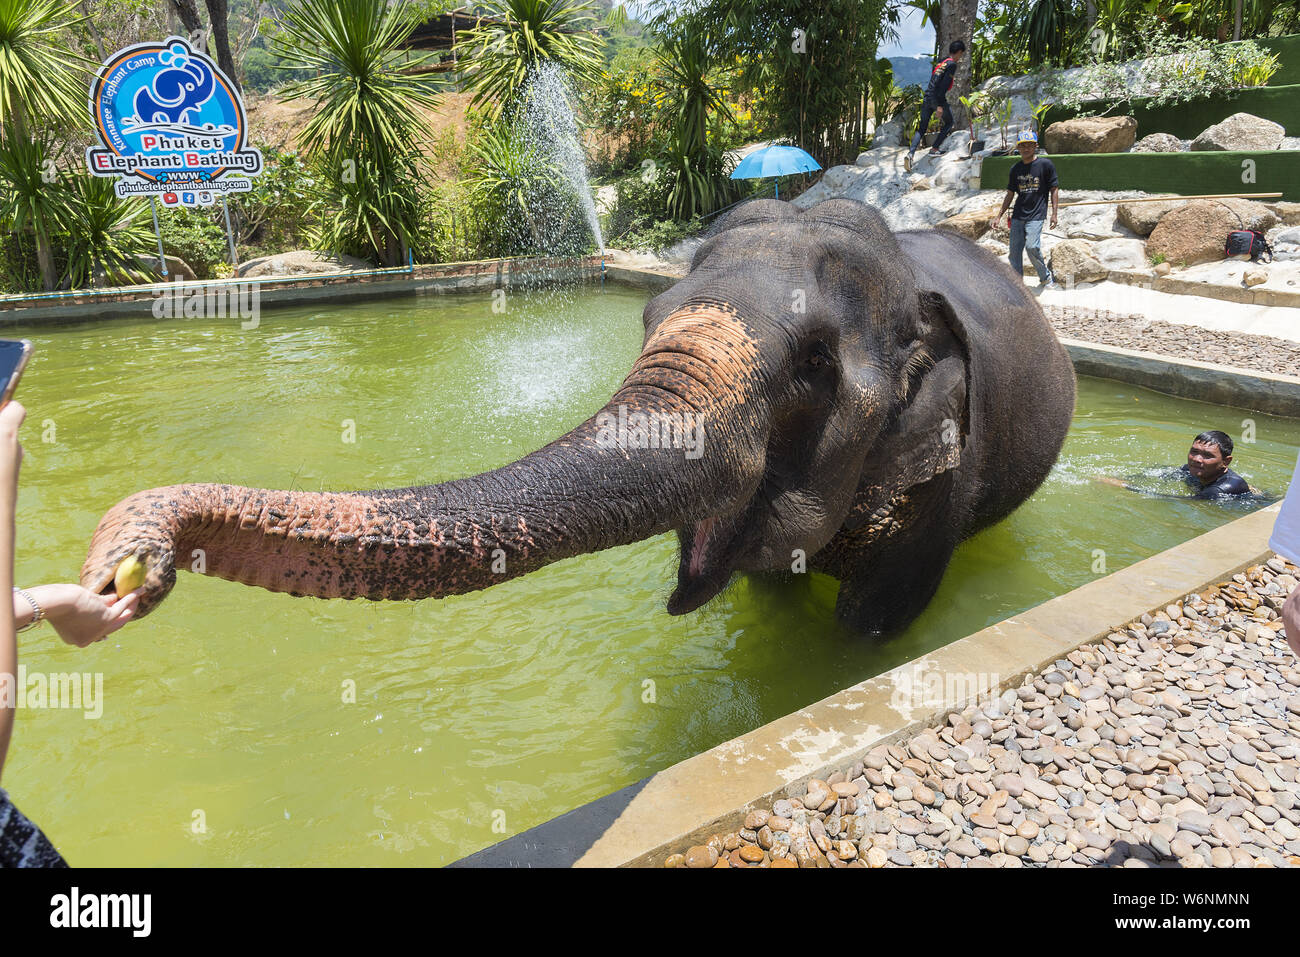 Phuket, Thailand - 04/19/2019 - Elephant bathing camp in Phuket with captive elephant in bathing pool being fed by tourists. Stock Photo